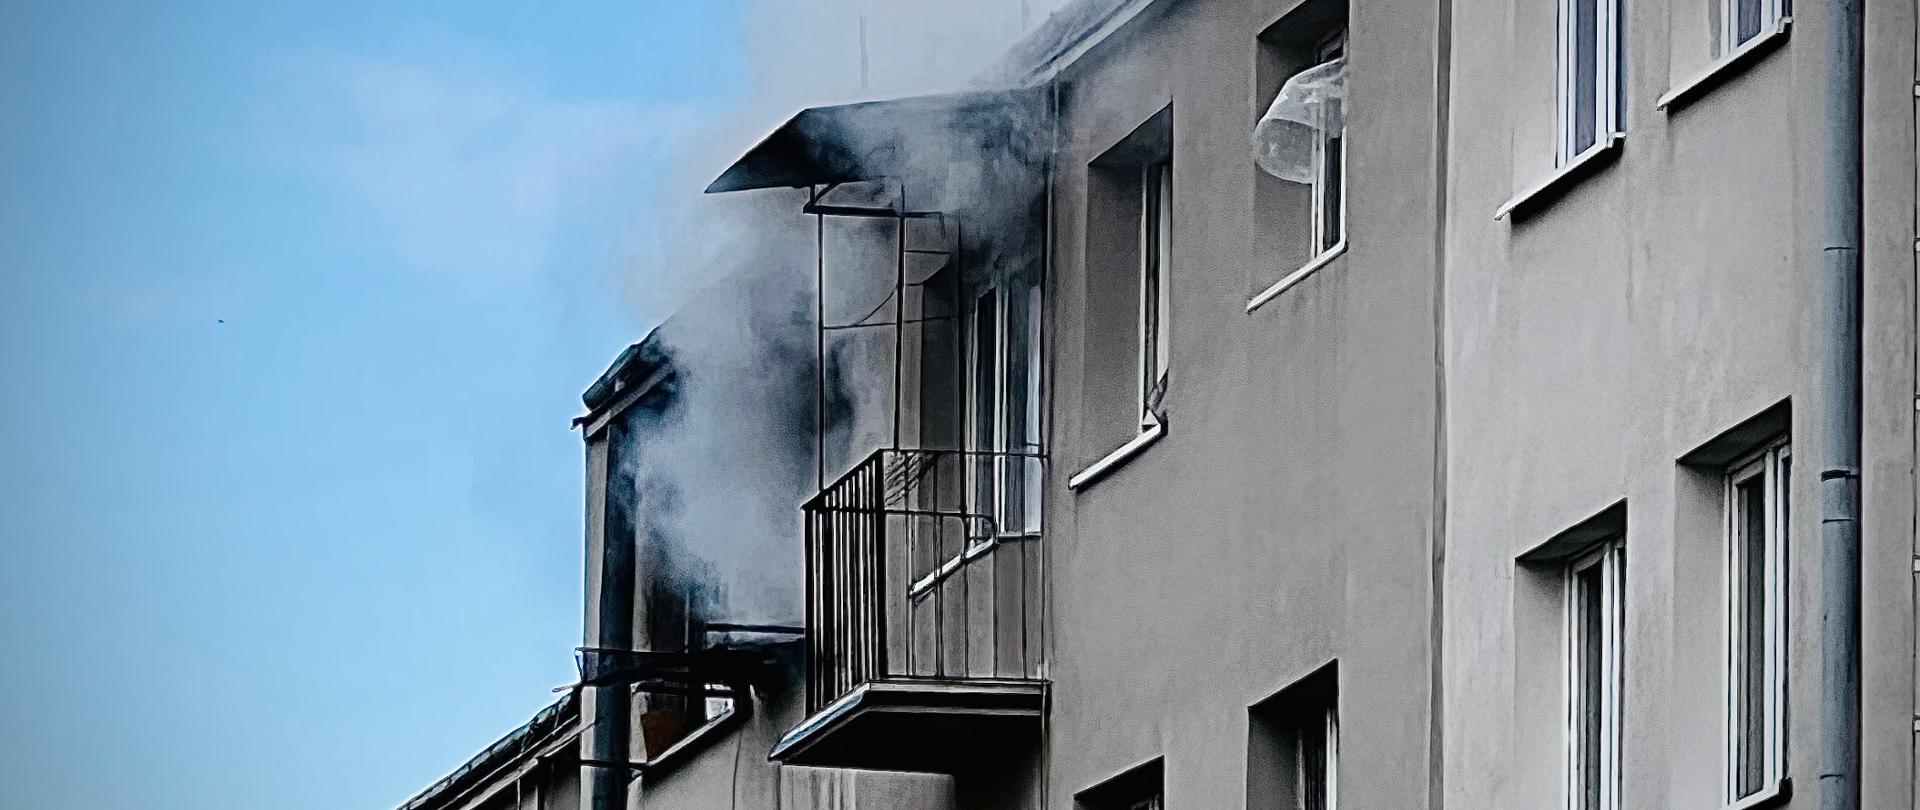 Zdjęcie przedstawia fasadę bloku mieszkalnego. Na ostatniej kondygnacji widoczny jest gęsty dym wydobywający się z okien. W tle widoczne jest błękitne niebo.